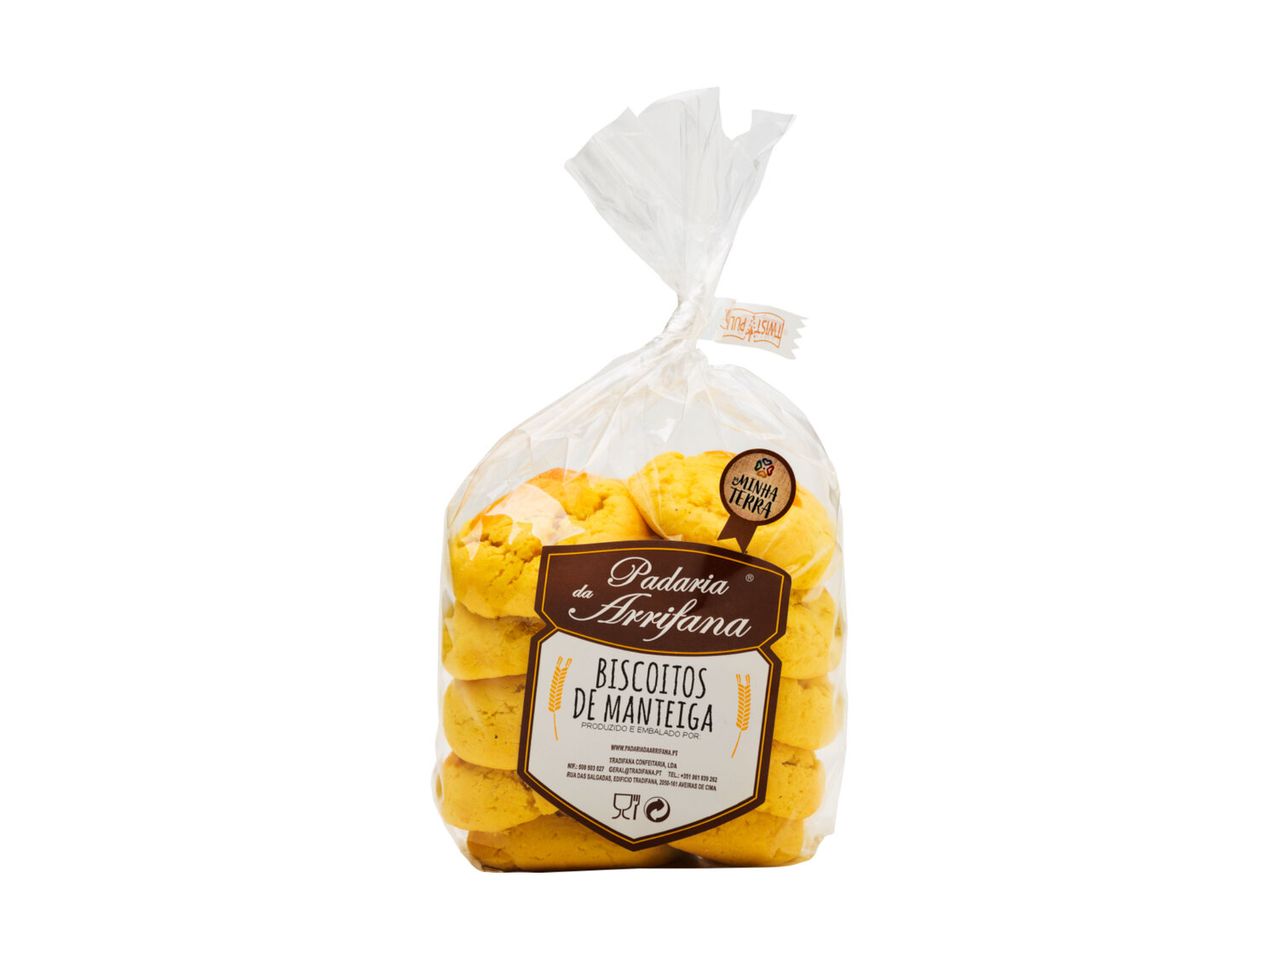 Ver empliada: Padaria da Arrifana® Biscoitos de Manteiga/ Canela - Imagem 3